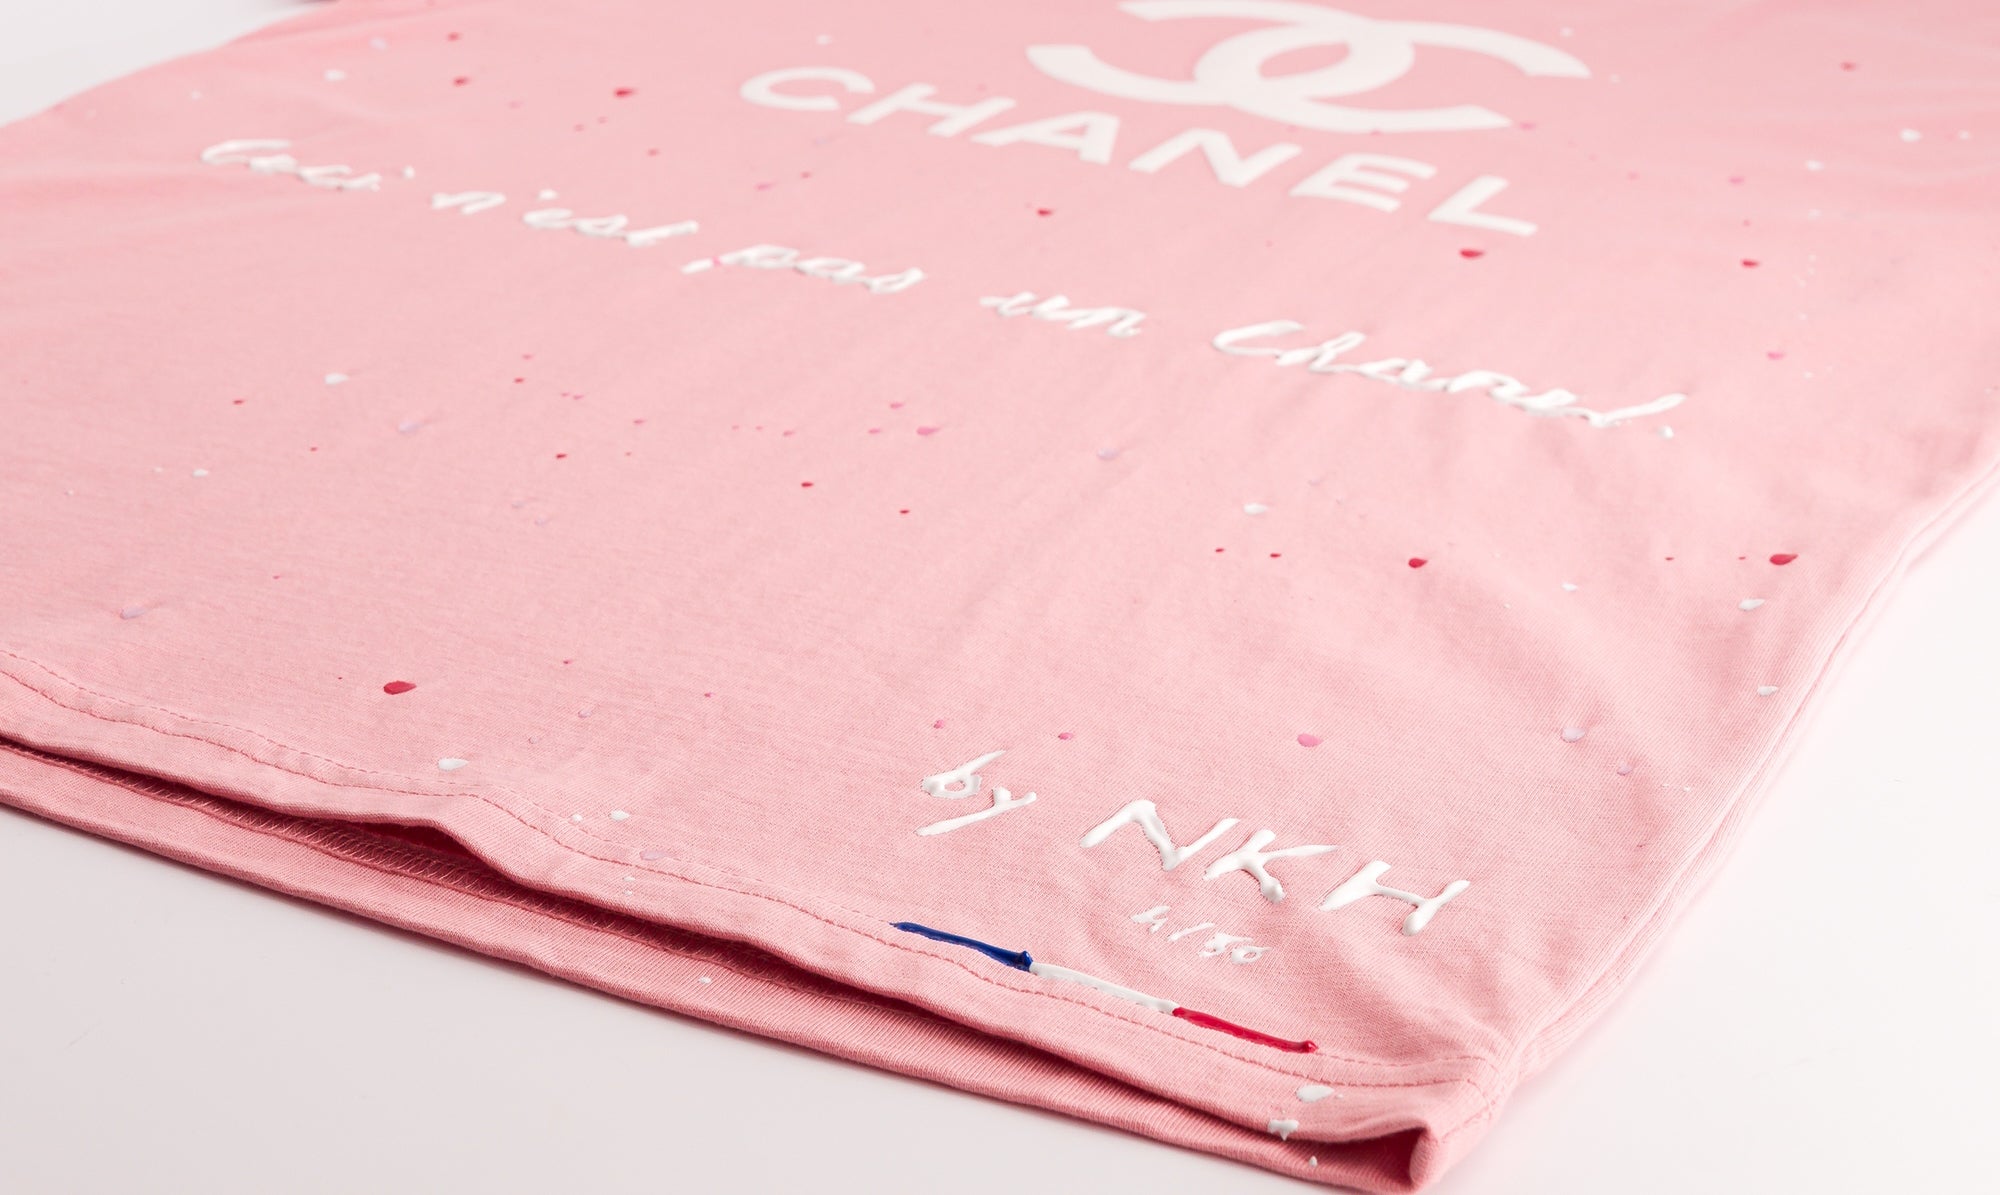 Tee-shirt rose foncé - Ceci n'est pas un Chanel